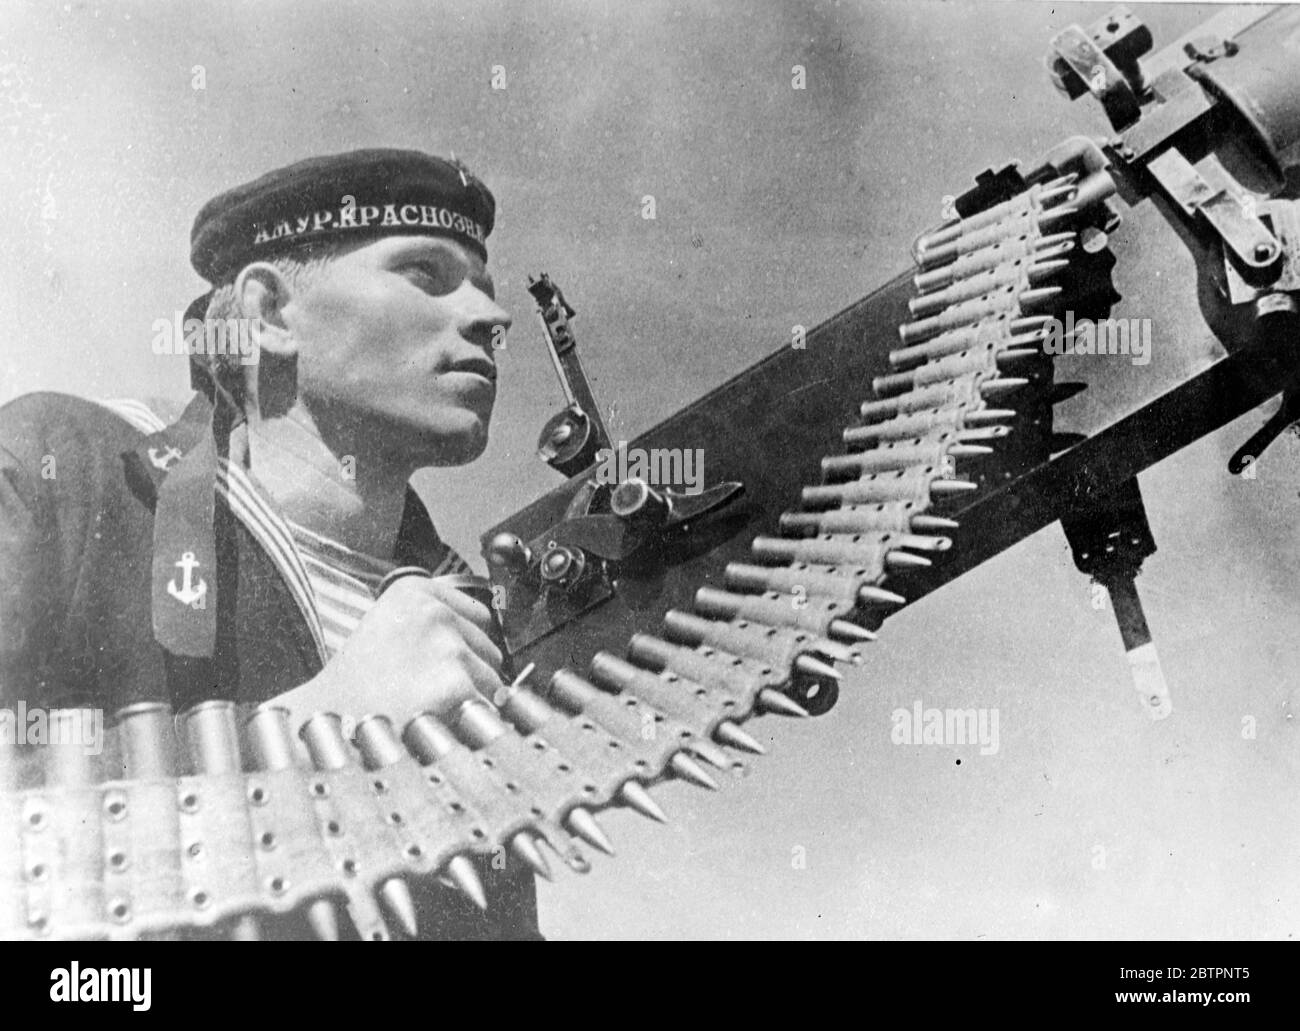 Morte nella cintura. Una banda di proiettili dall'aspetto vizioso pronti a iniziare altri errands della morte come una pistola risoluta nei siti armi della nave da guerra sovietica. 10 febbraio 1938 Foto Stock